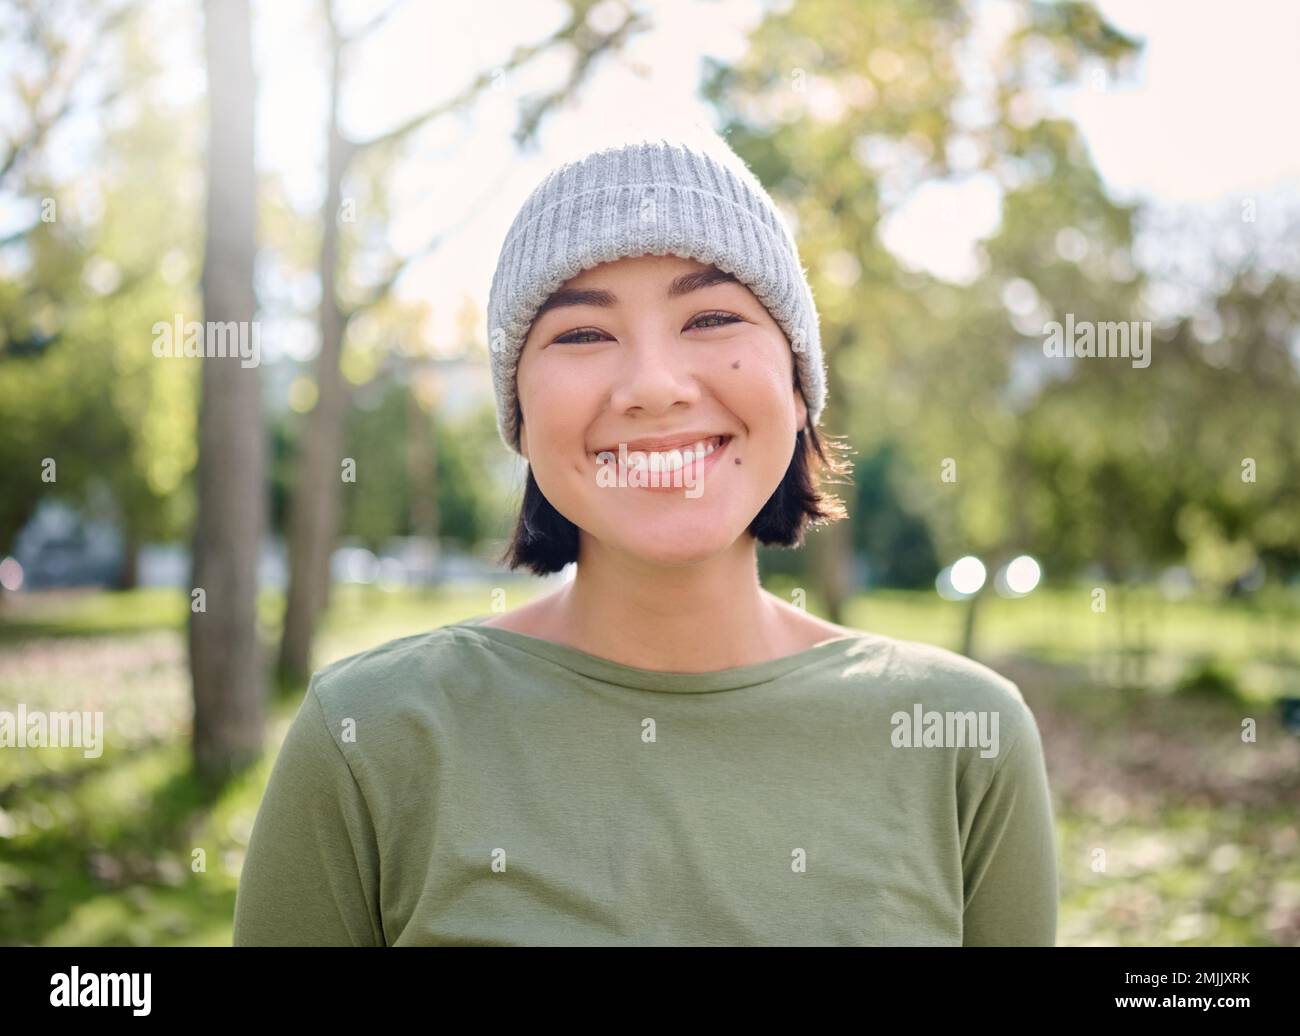 Natura, sorriso e ritratto di donna asiatica in foresta per l'avventura, la libertà e l'escursionismo per il fitness. Benessere, relax e viso di ragazza godendo di aria fresca Foto Stock